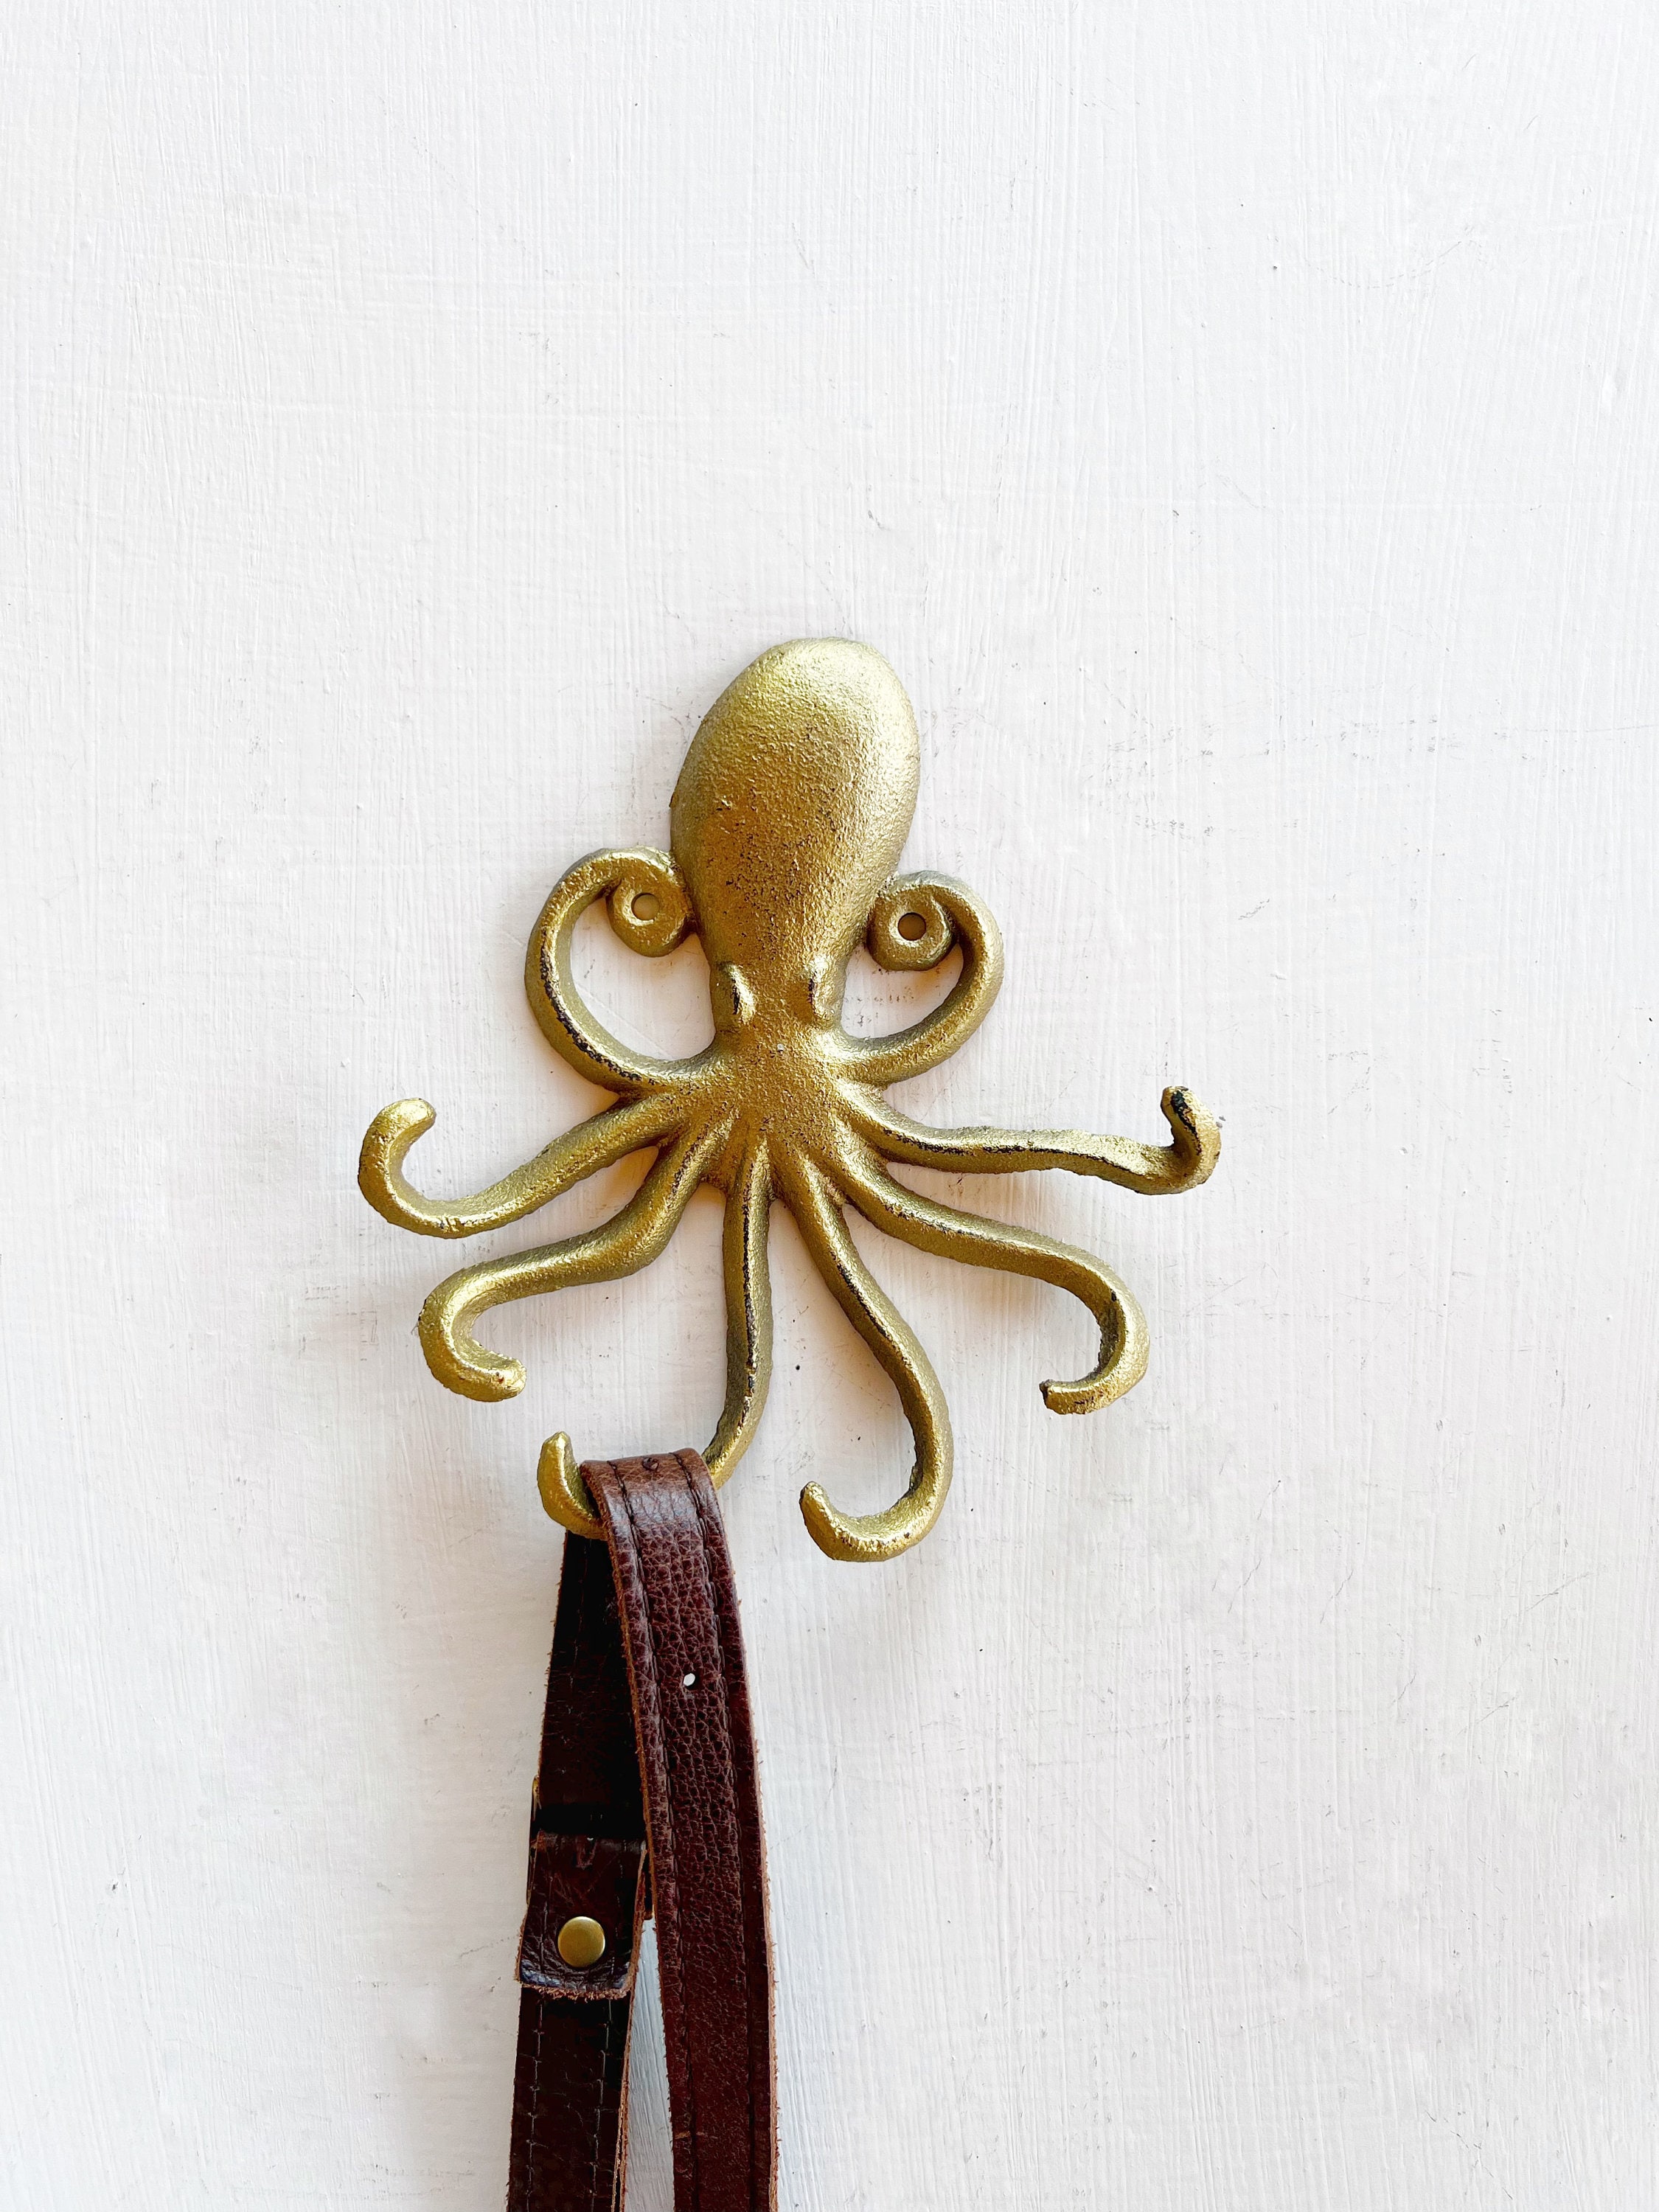 Octopus Hook, Small Wall Hooks, Nautical Hooks, Vintage Style Coat Hooks,  Ocean Themed, Bathroom Hooks, Coat Hooks 